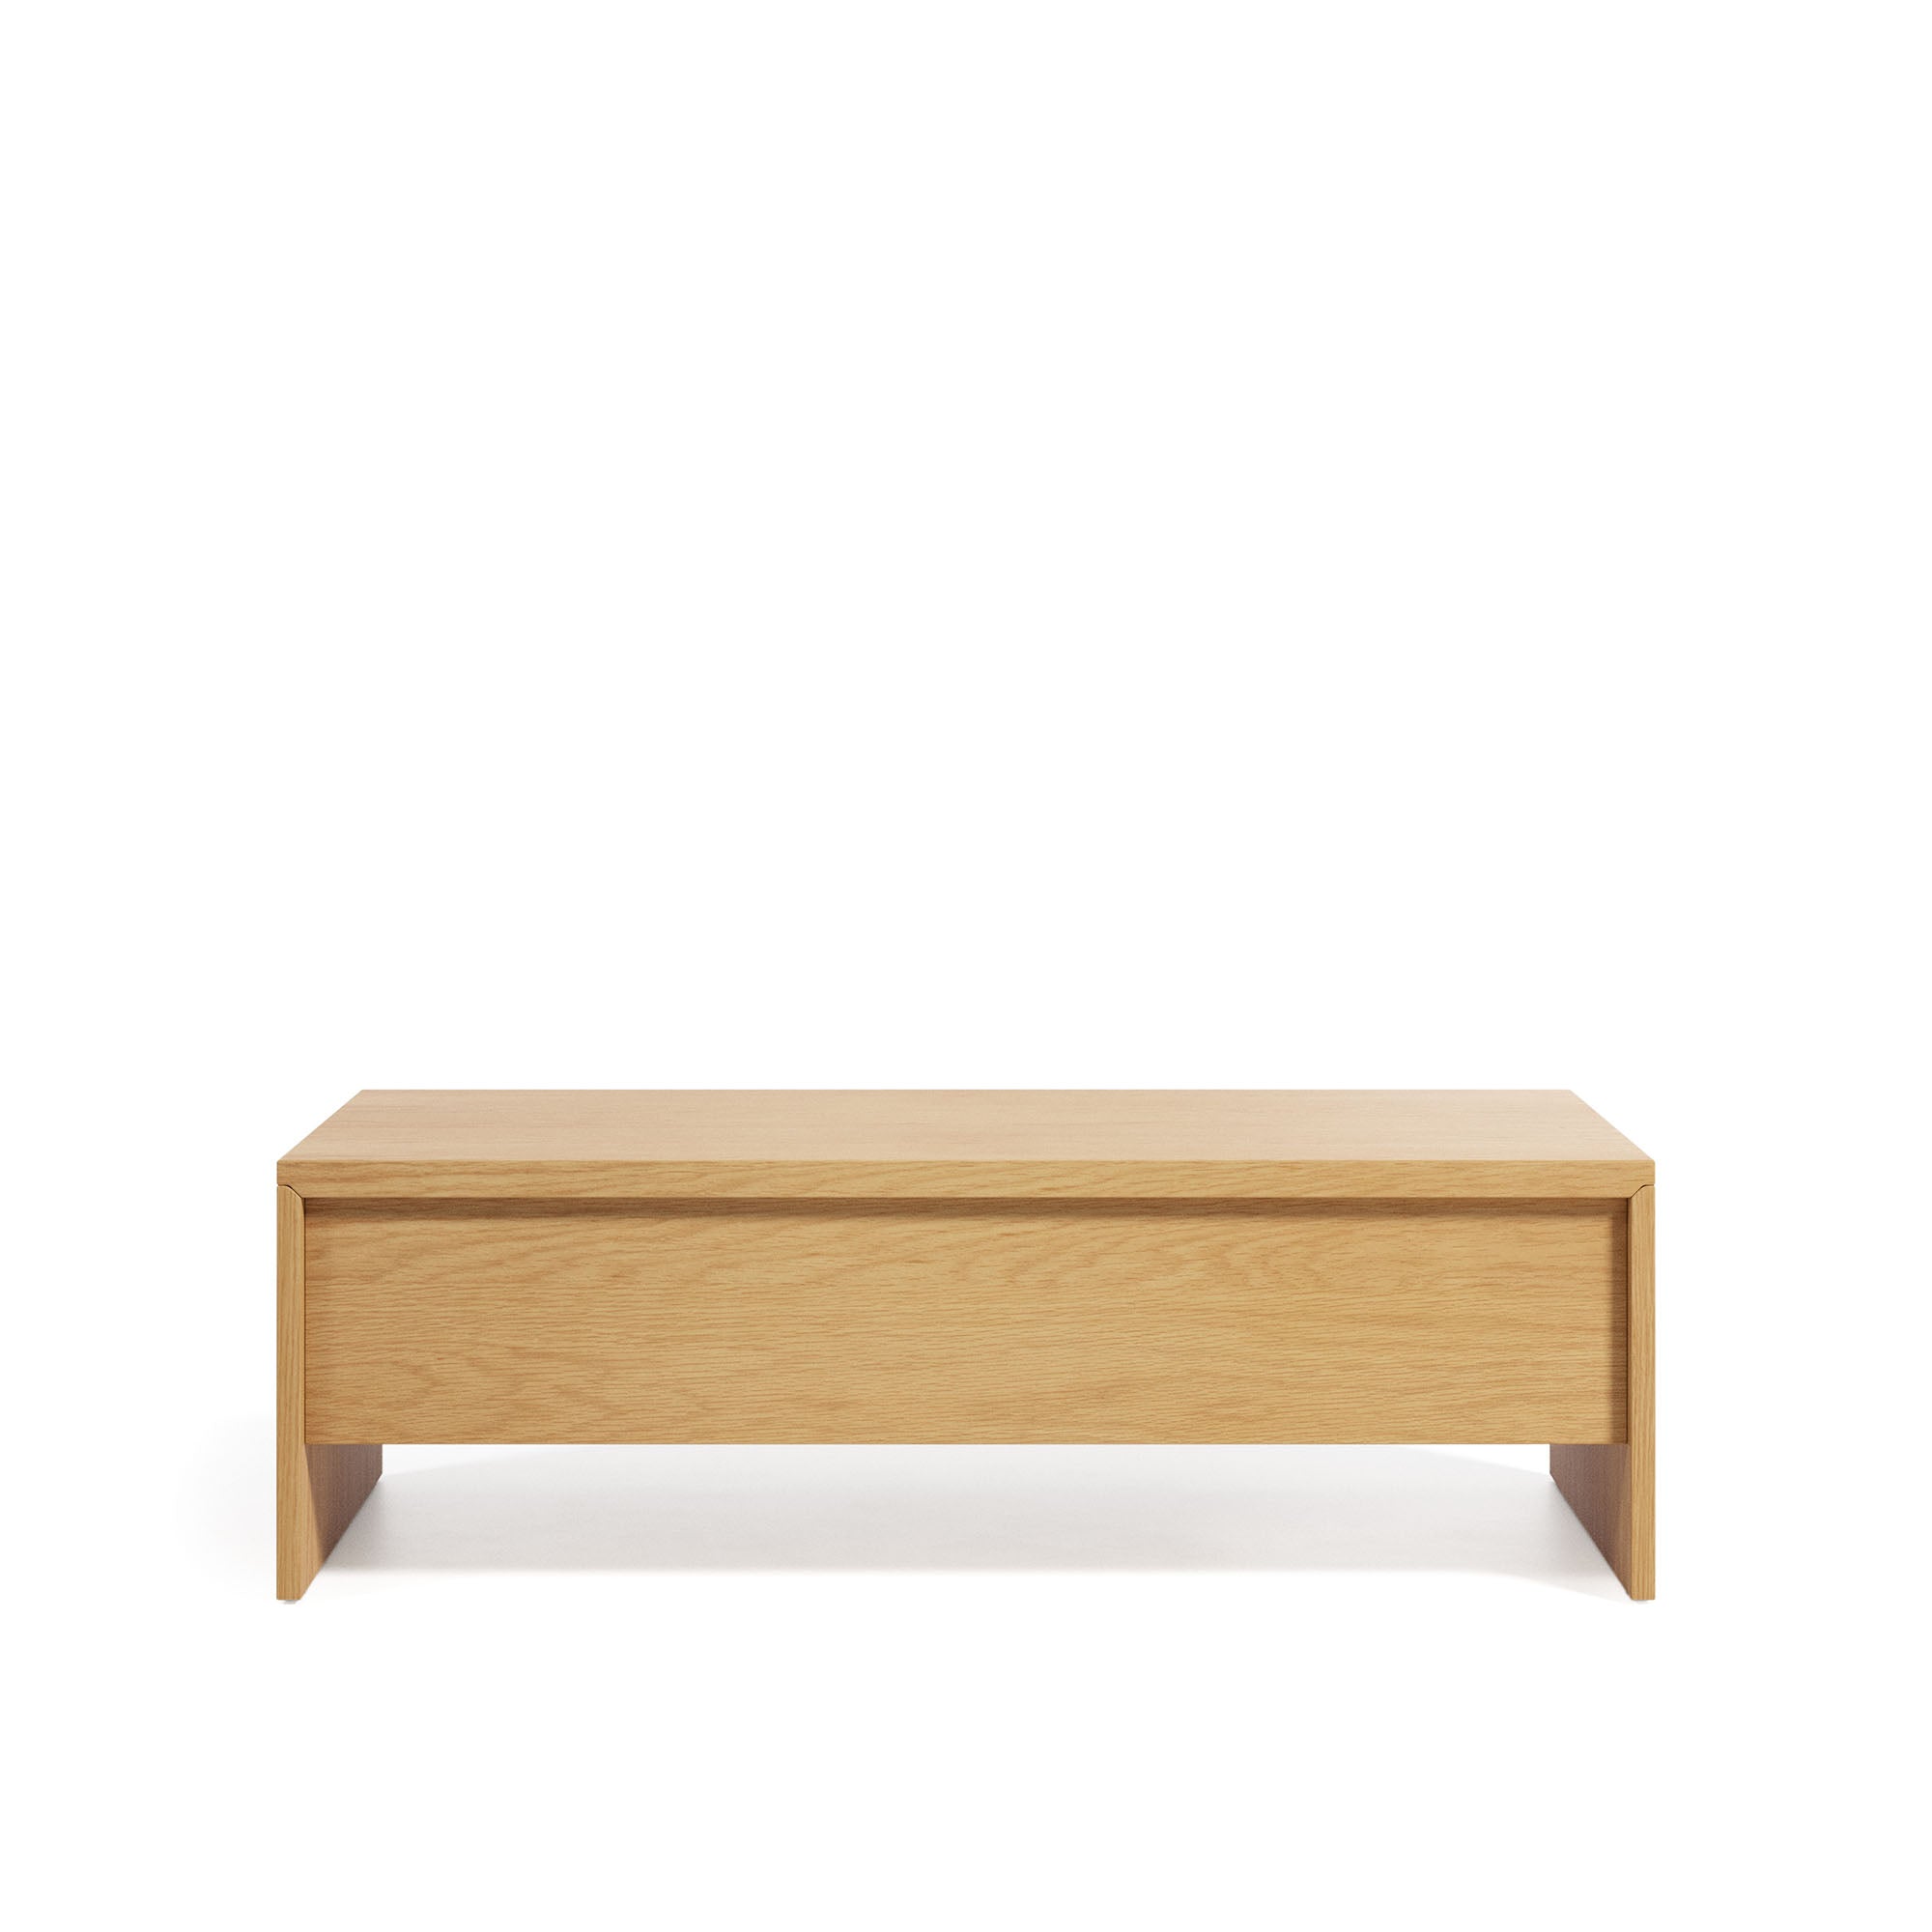 Abilen oak coffee table with raised top 110 x 60 cm FSC 100%